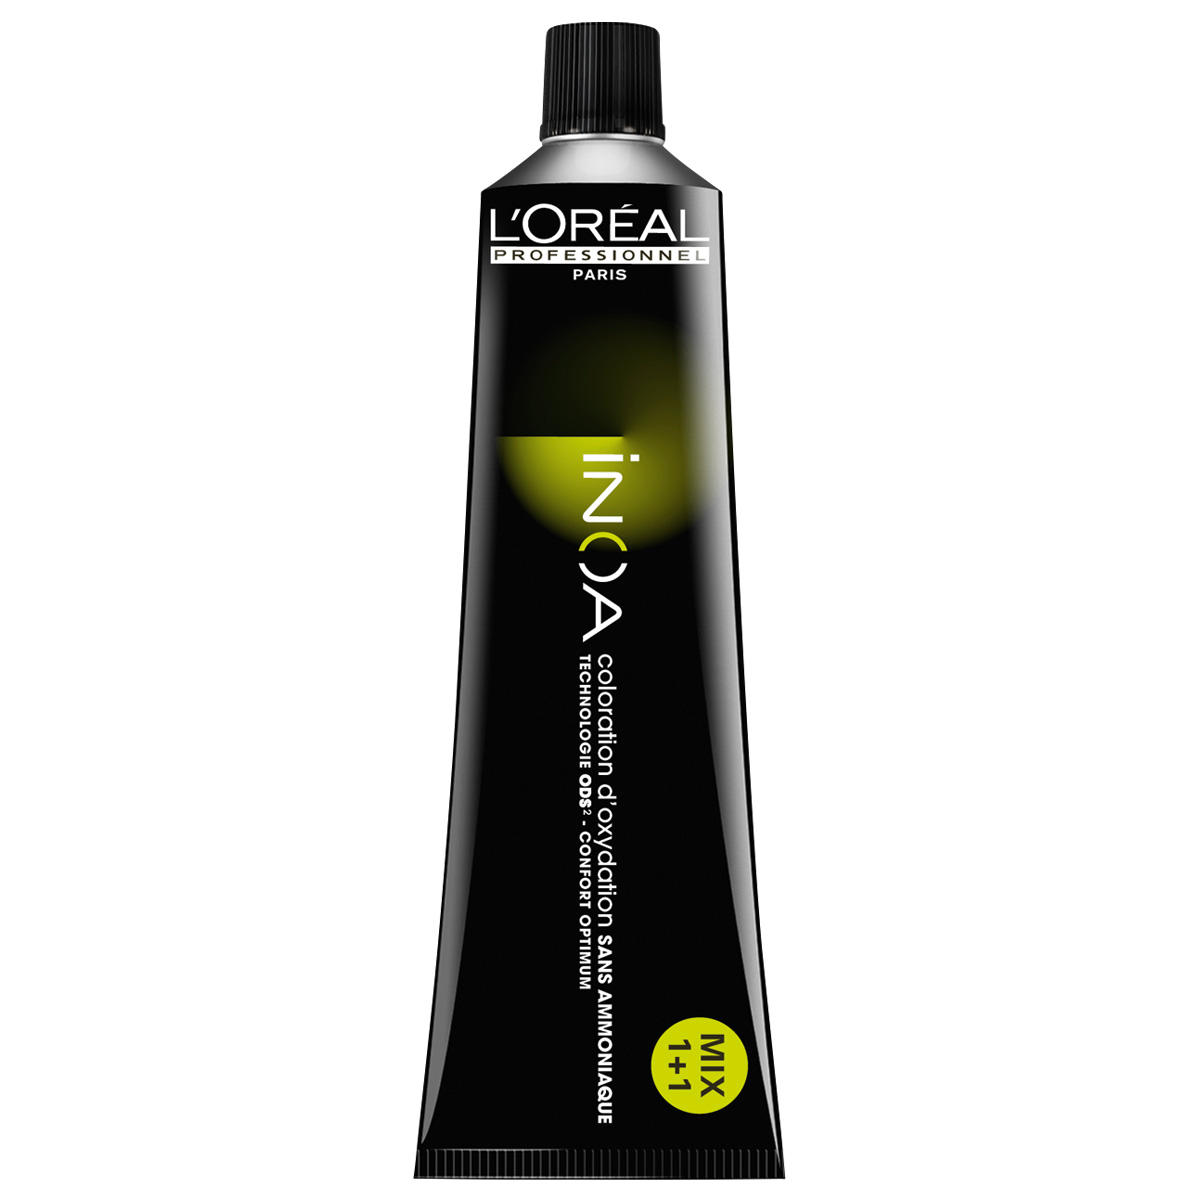 L'Oréal Professionnel Paris Coloration 10 Platinblond, Tube 60 ml - 1